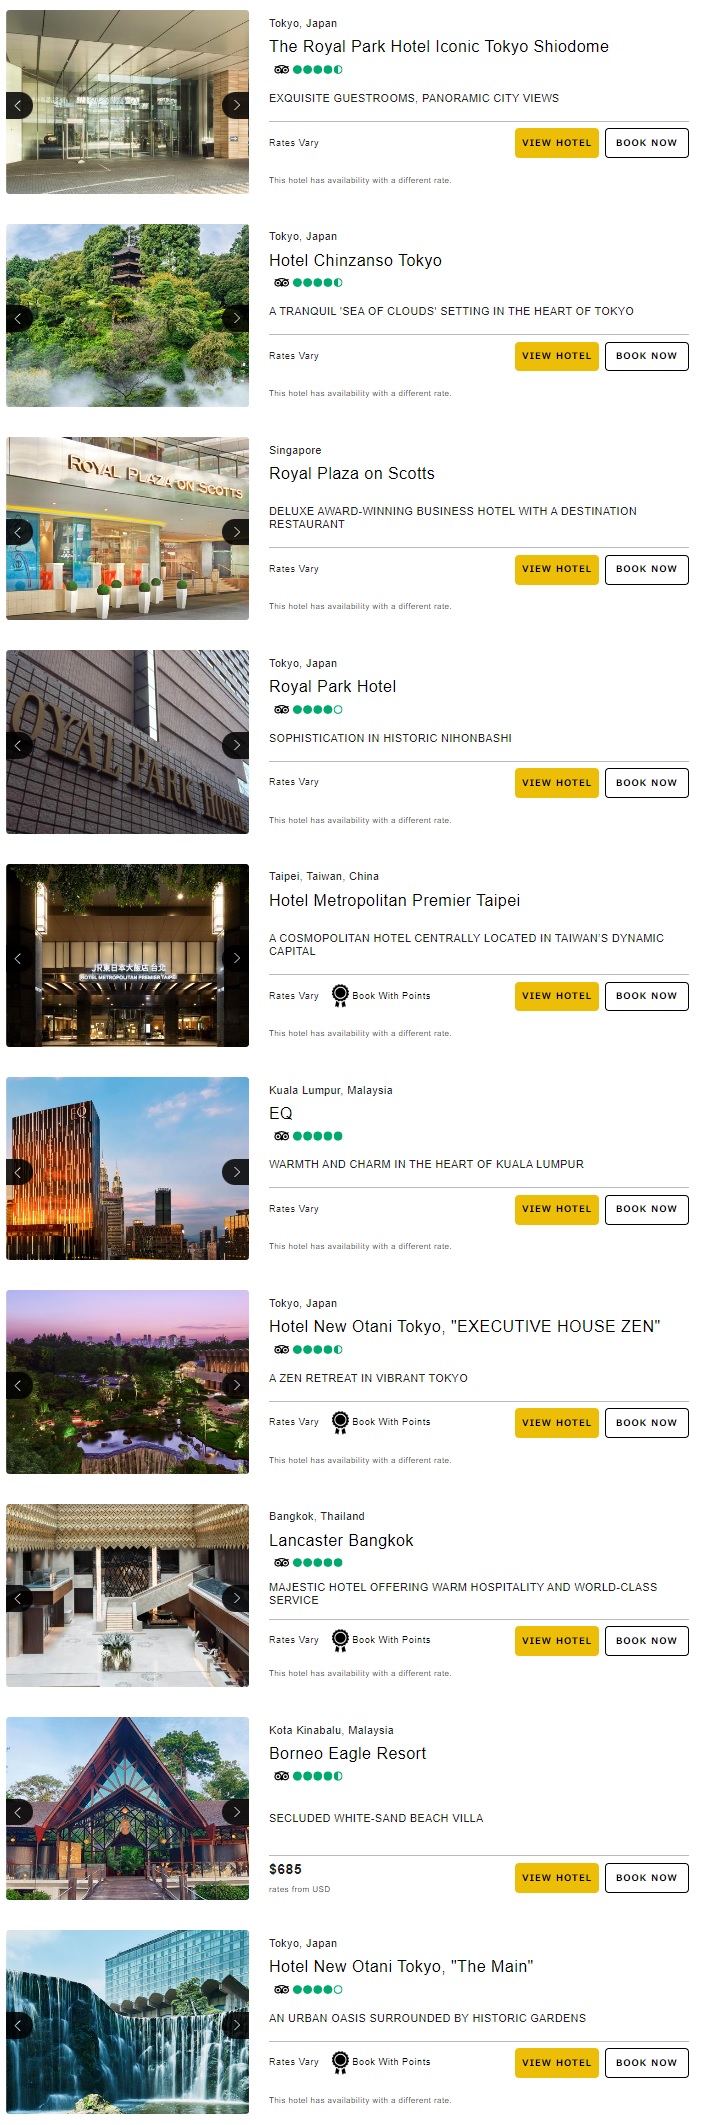 プリファード ホテル 日本を含むアジア滞在で 5,000 ボーナス ポイントキャンペーン1